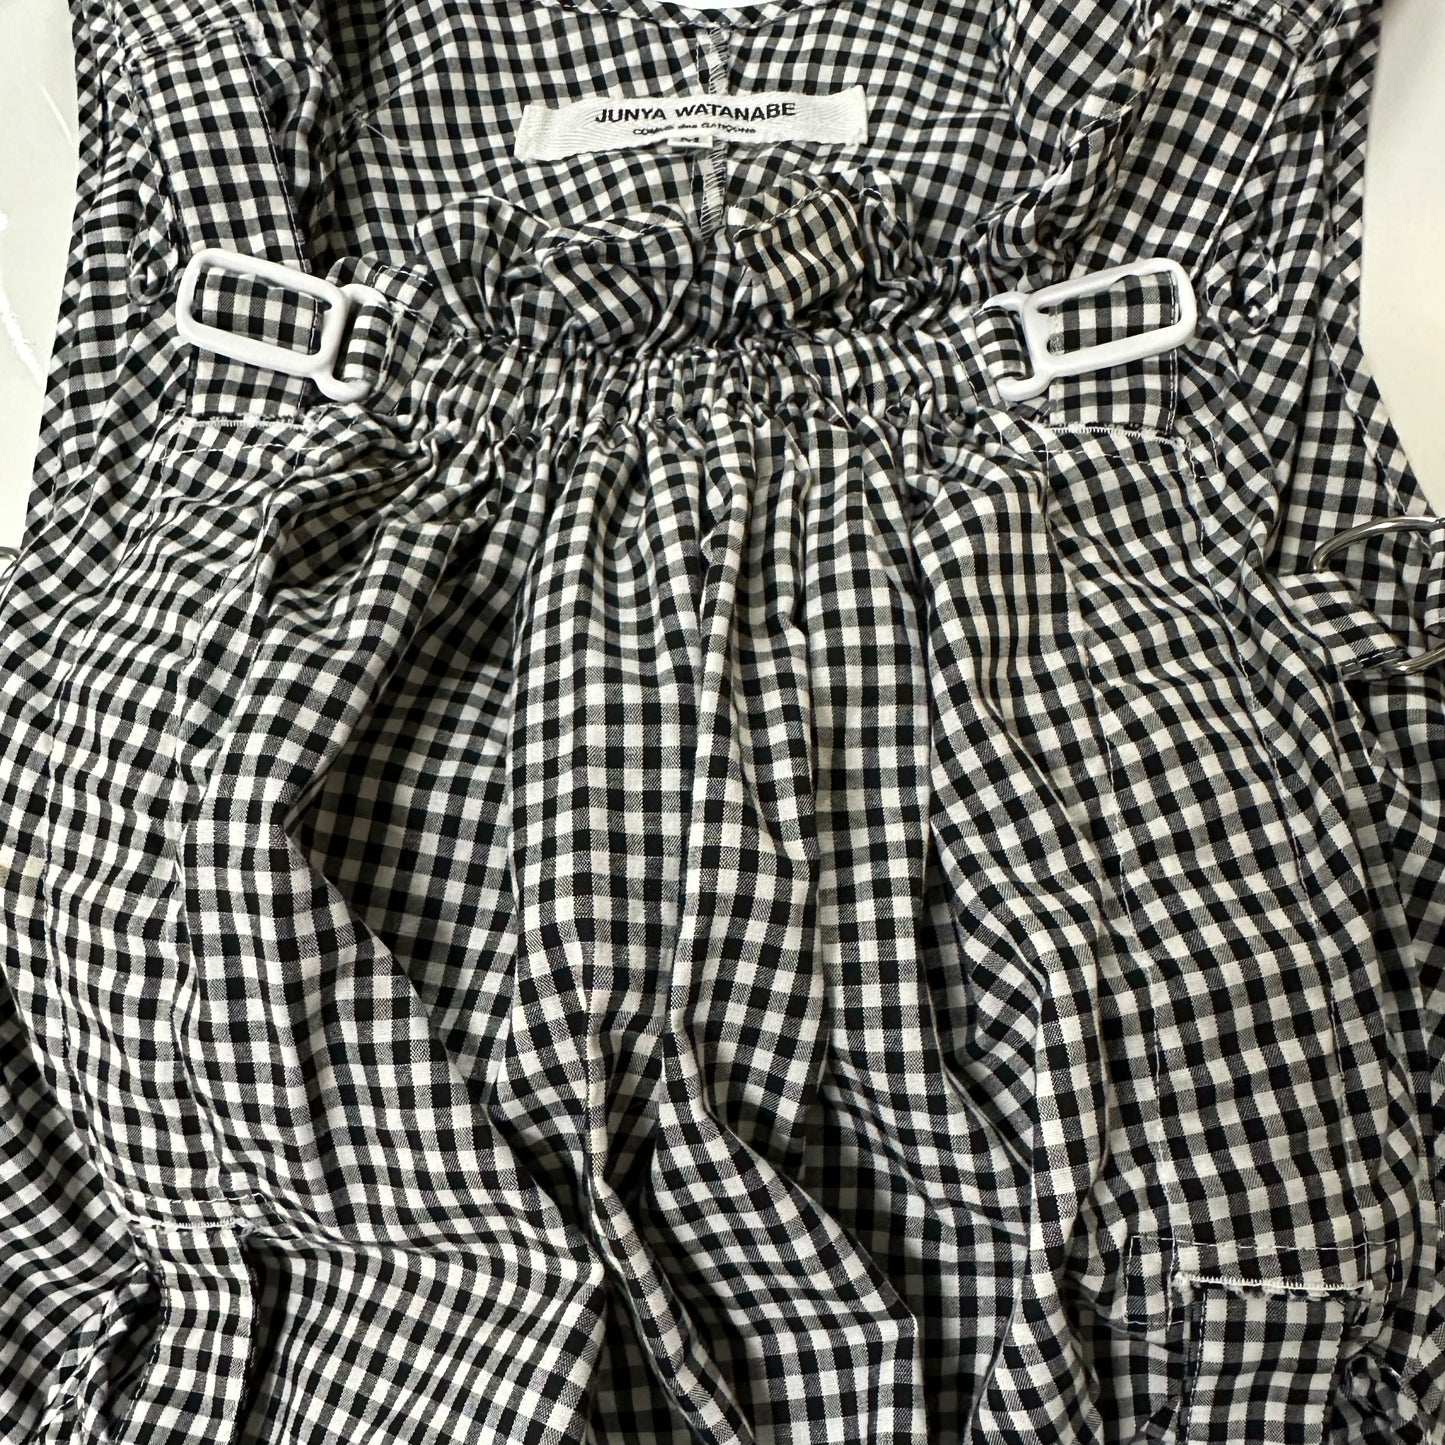 JUNYA WATANABE Spring Summer 2003 Checkered Print Parachute Top